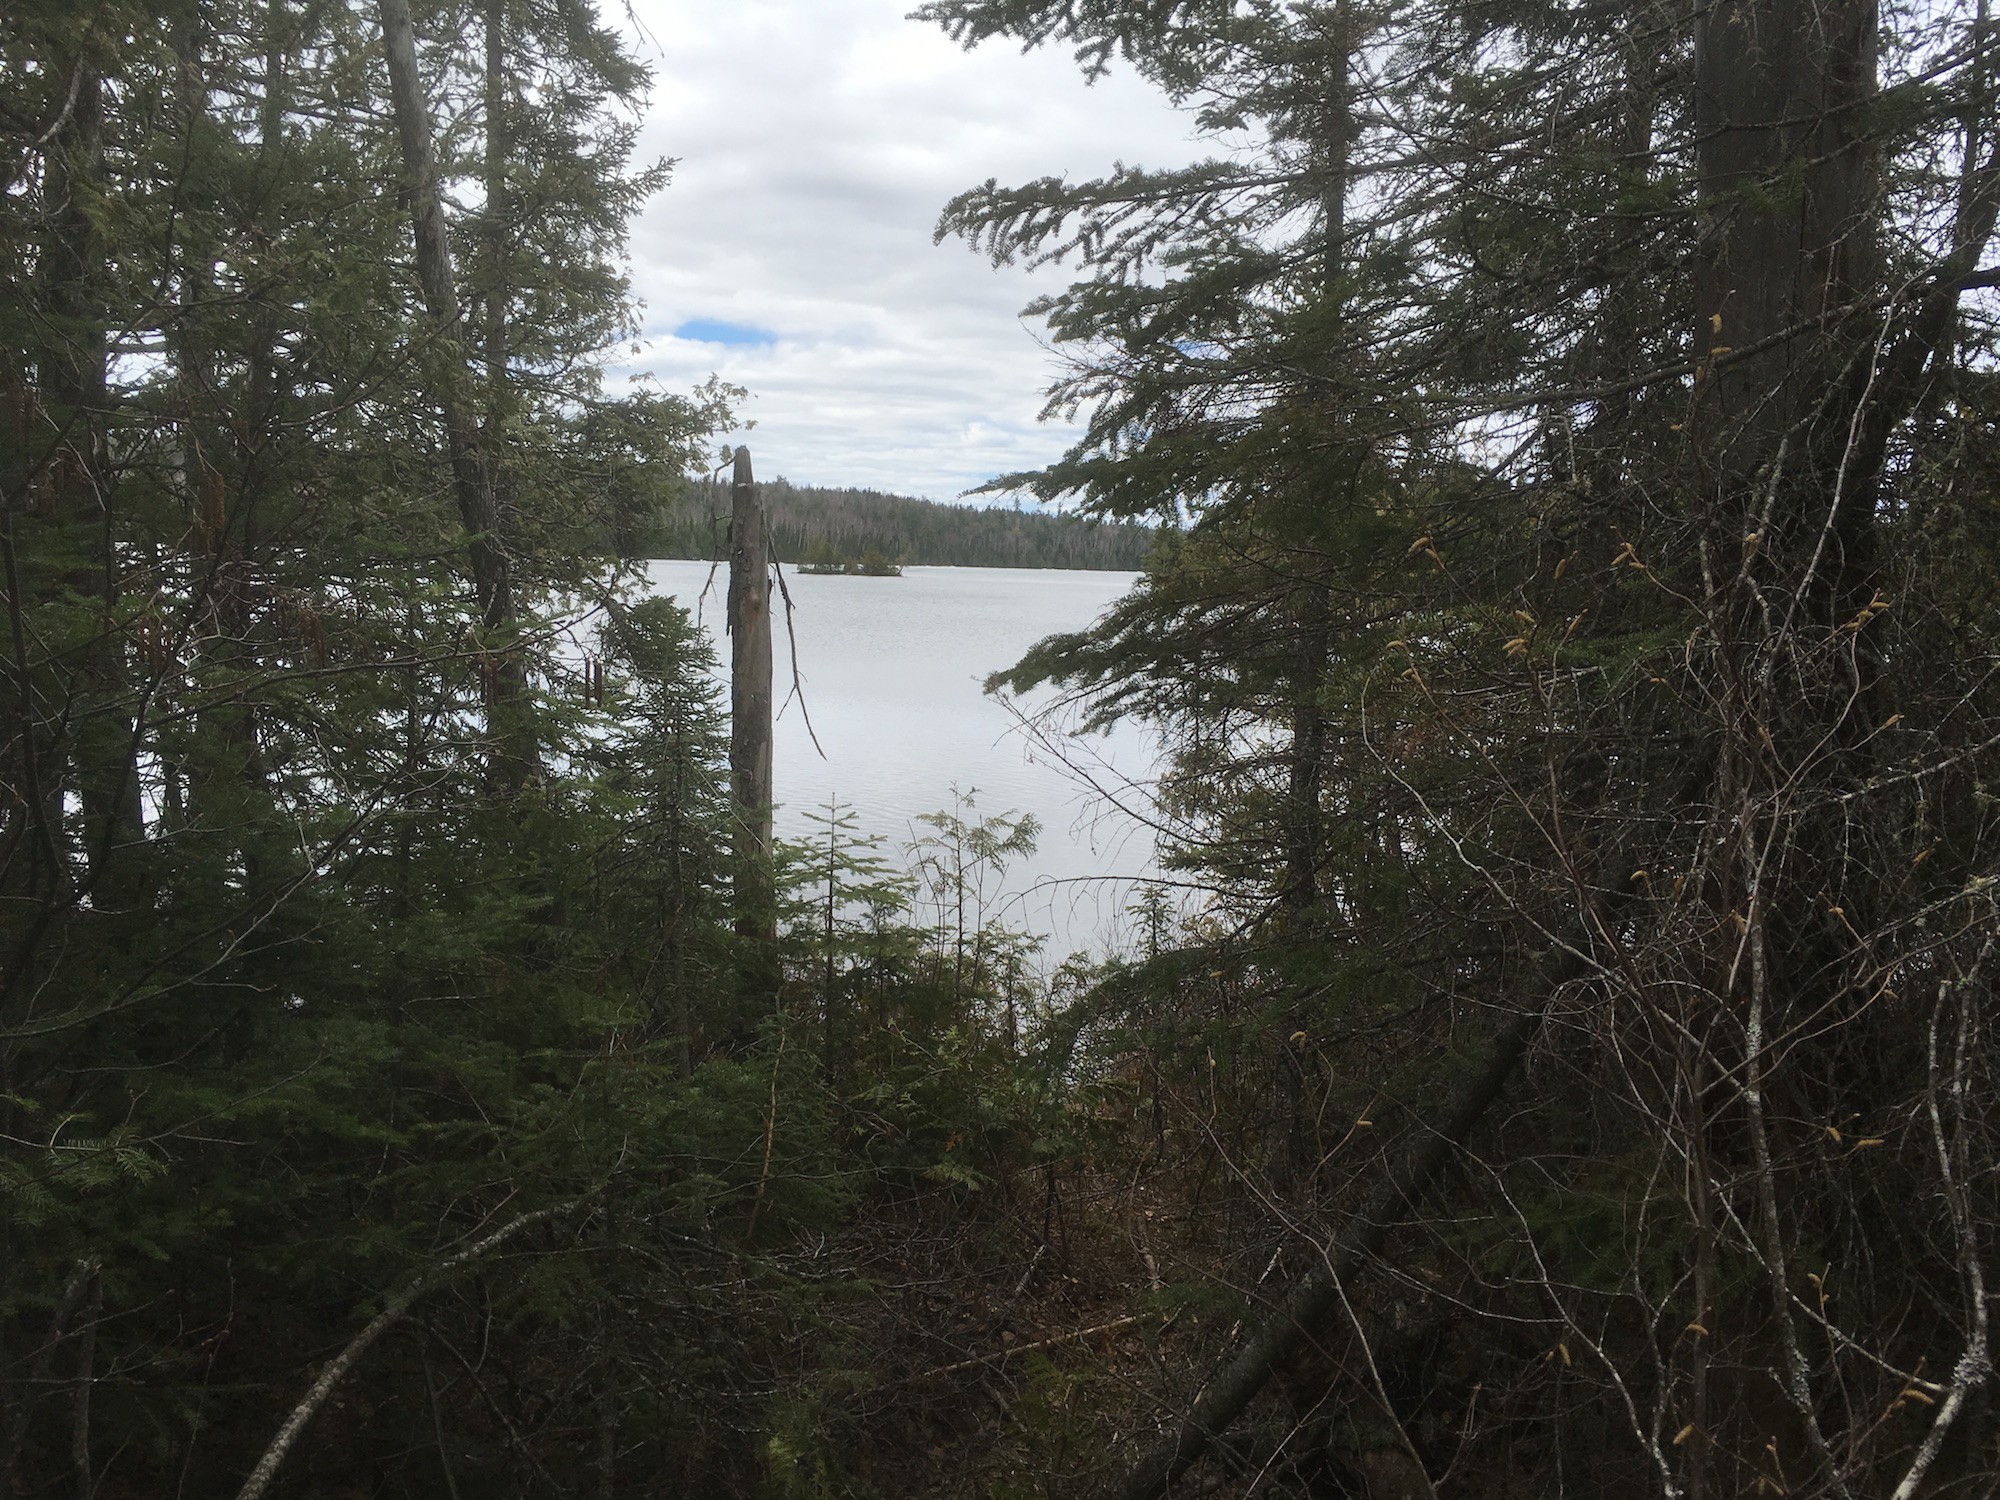 South Lake Trail April 30, 2016